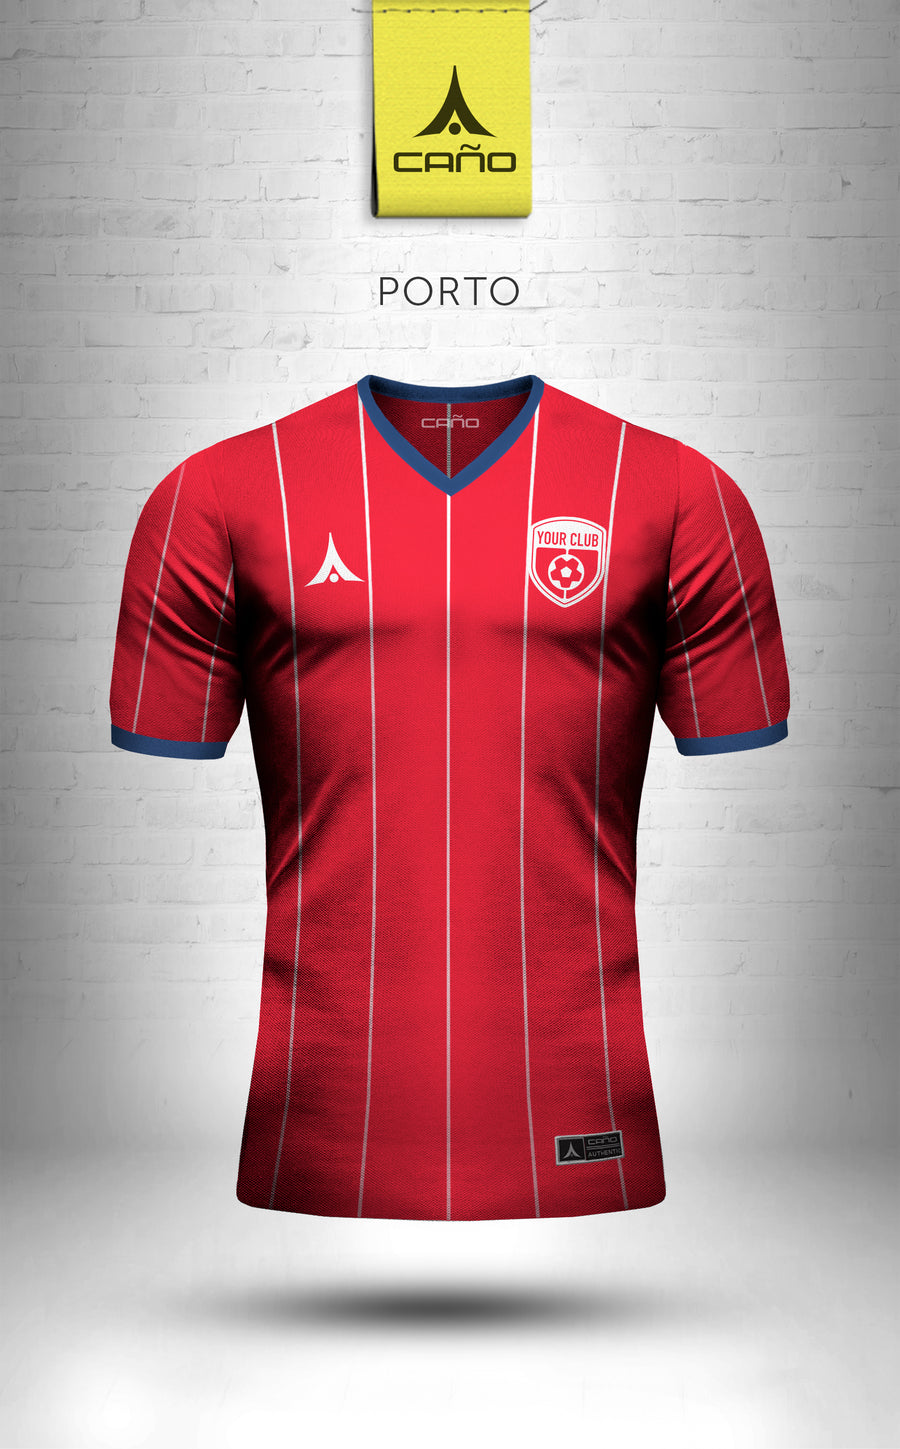 Porto in red/blue/white